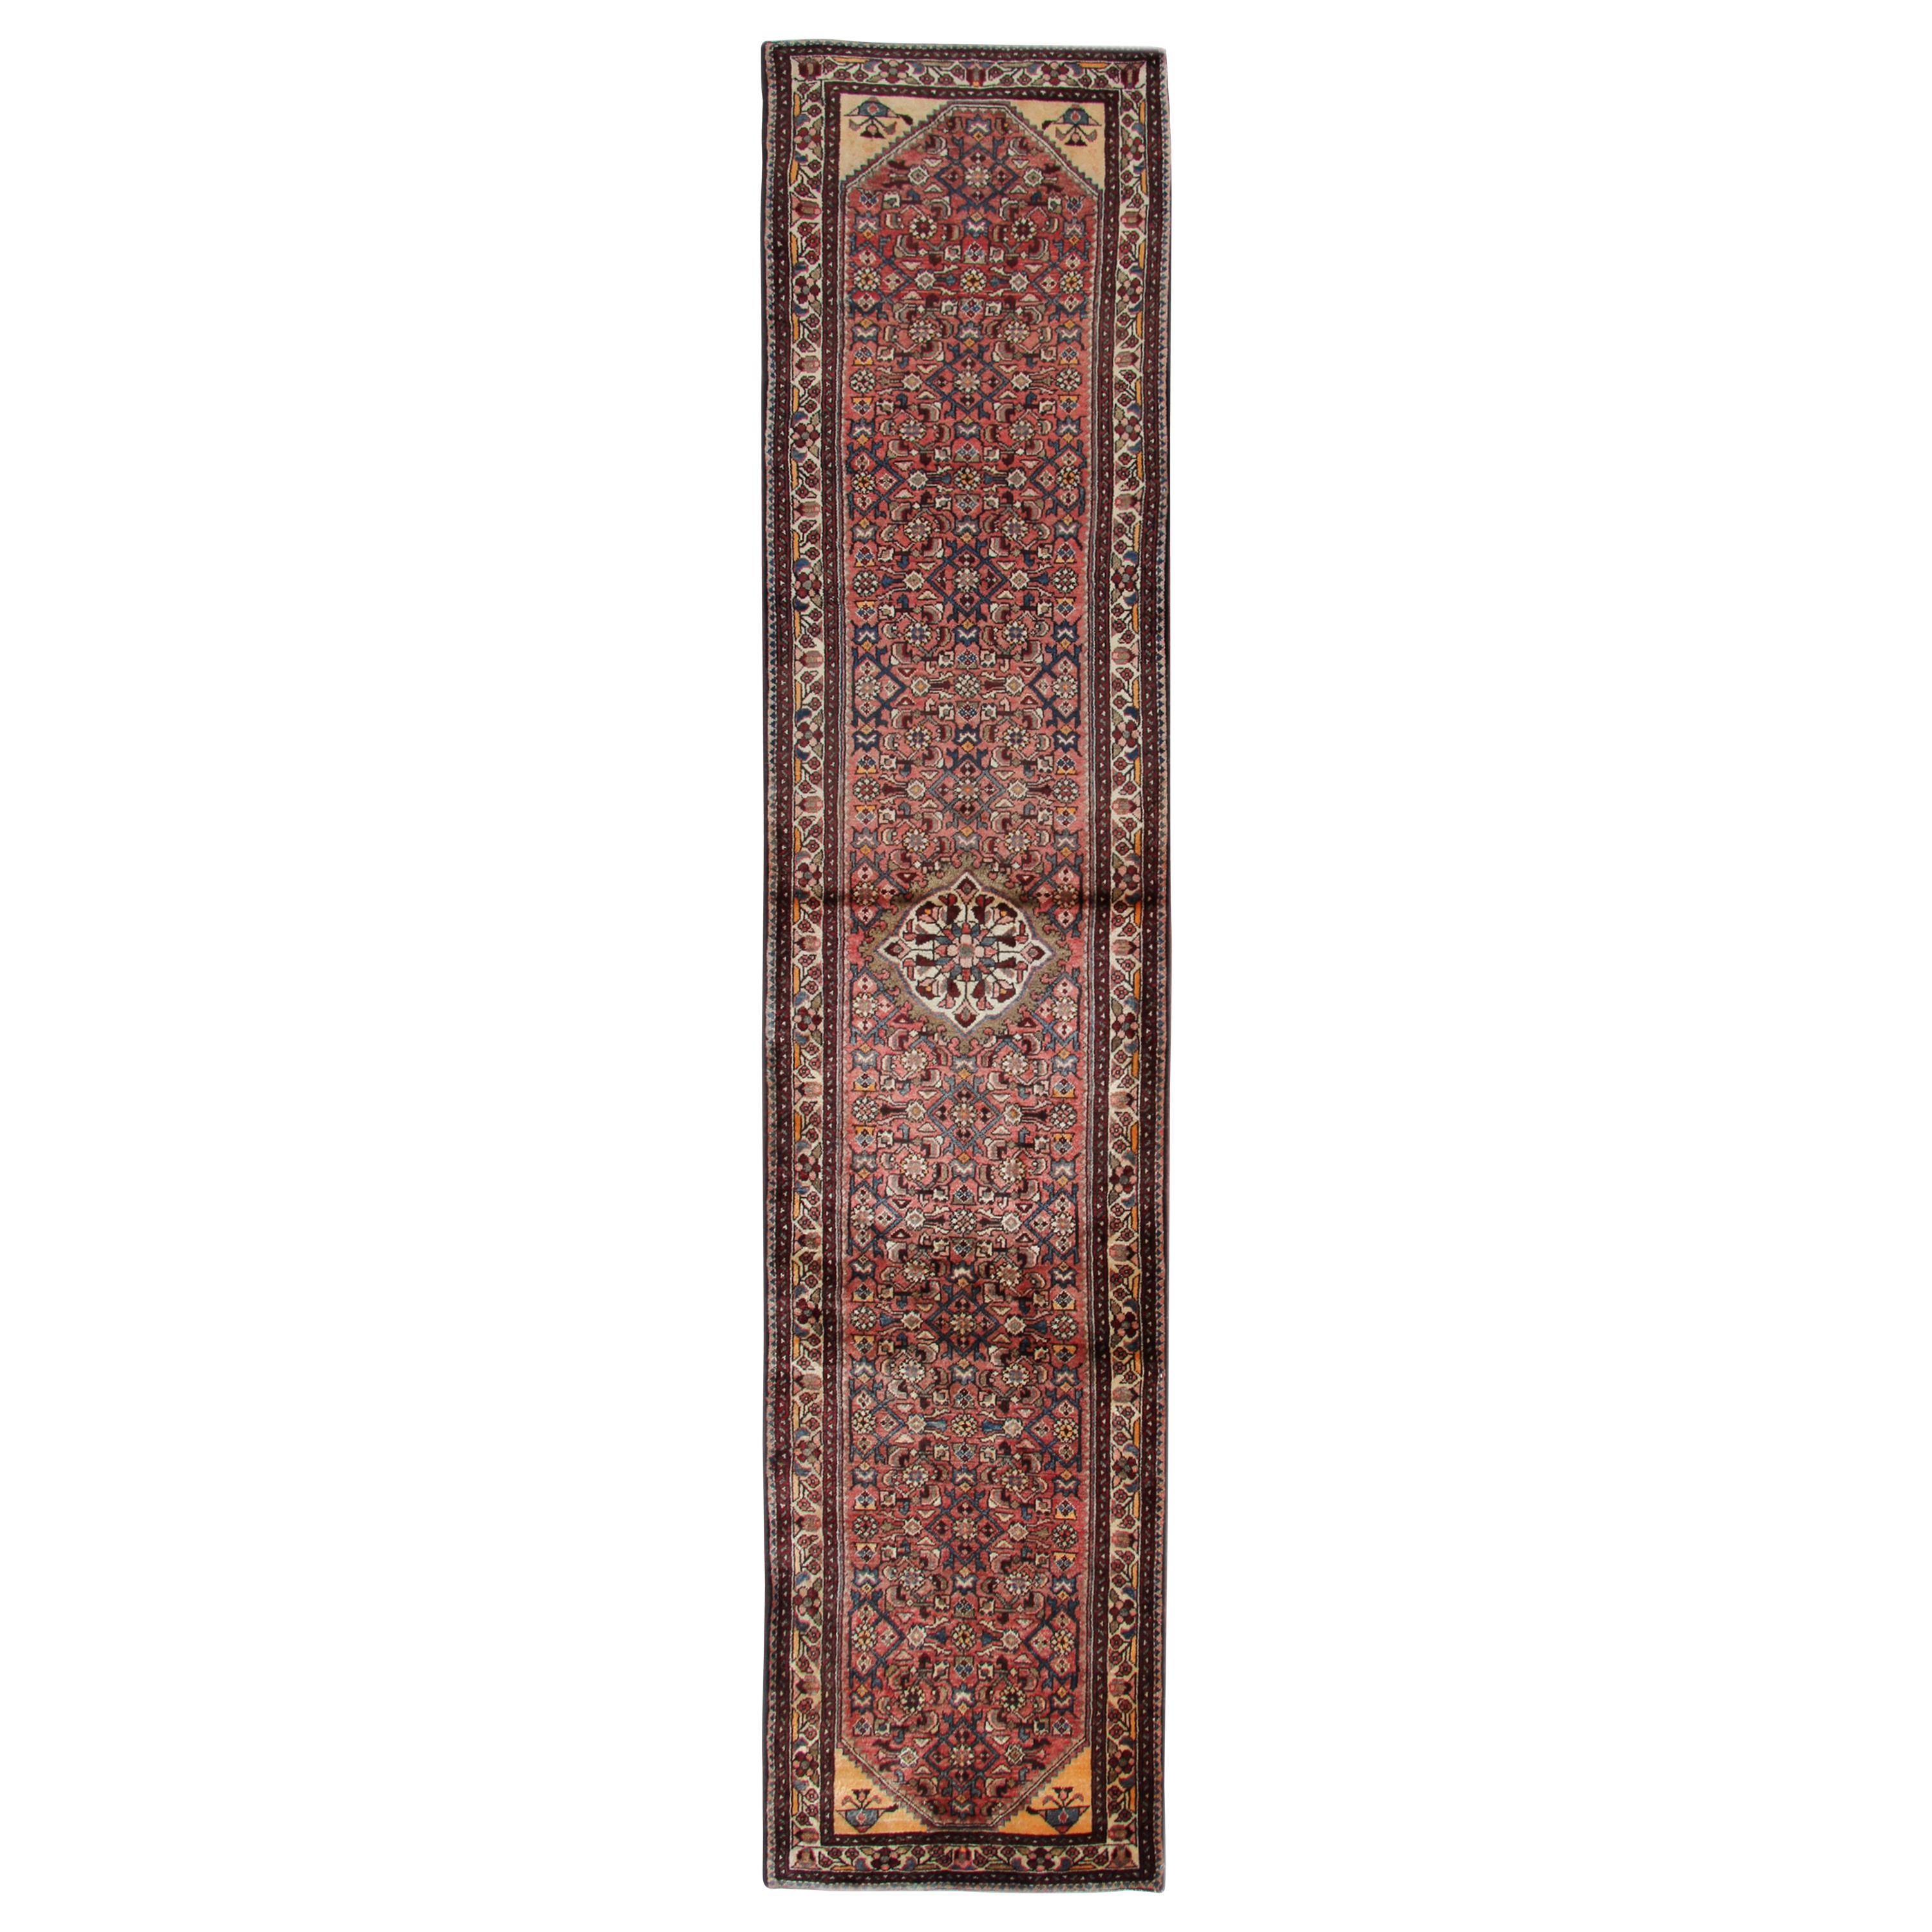 Antique Handmade Carpet Runner Oriental Rug Traditional Wool Runner 390x85cm  For Sale